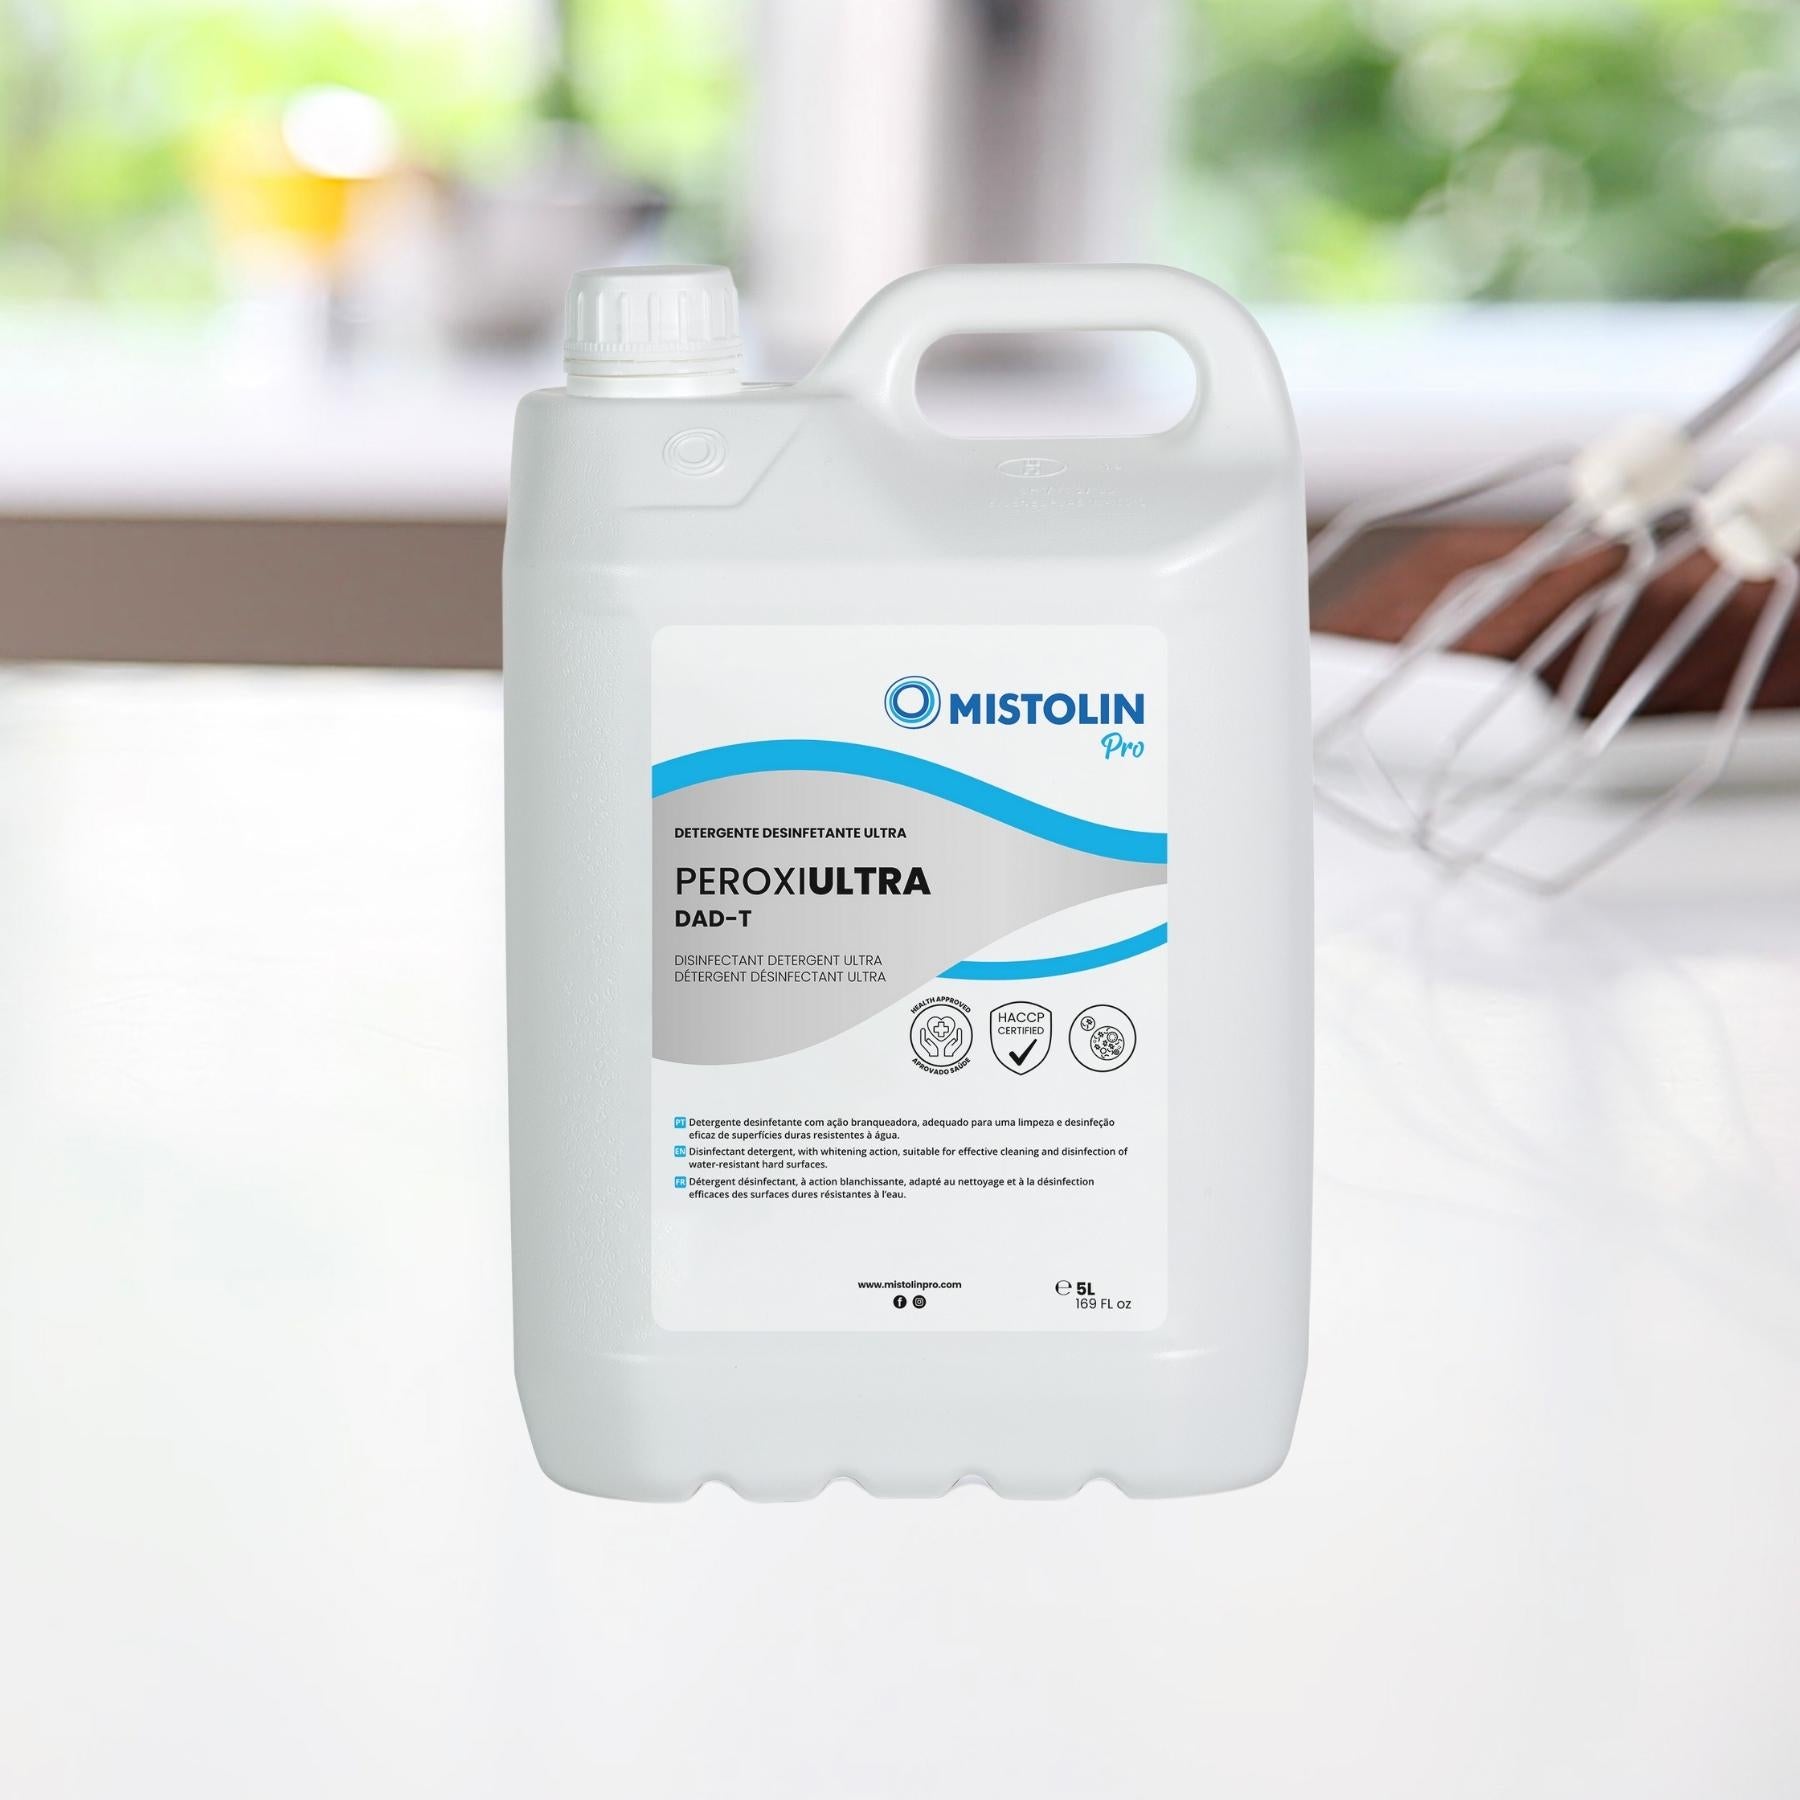 PEROXI ULTRA DAD-T DETERGENTE DESINFETANTE 5LT, é um detergente desinfetante com ação branqueadora, adequado para uma limpeza e desinfeção eficaz de superfícies duras resistentes à água.